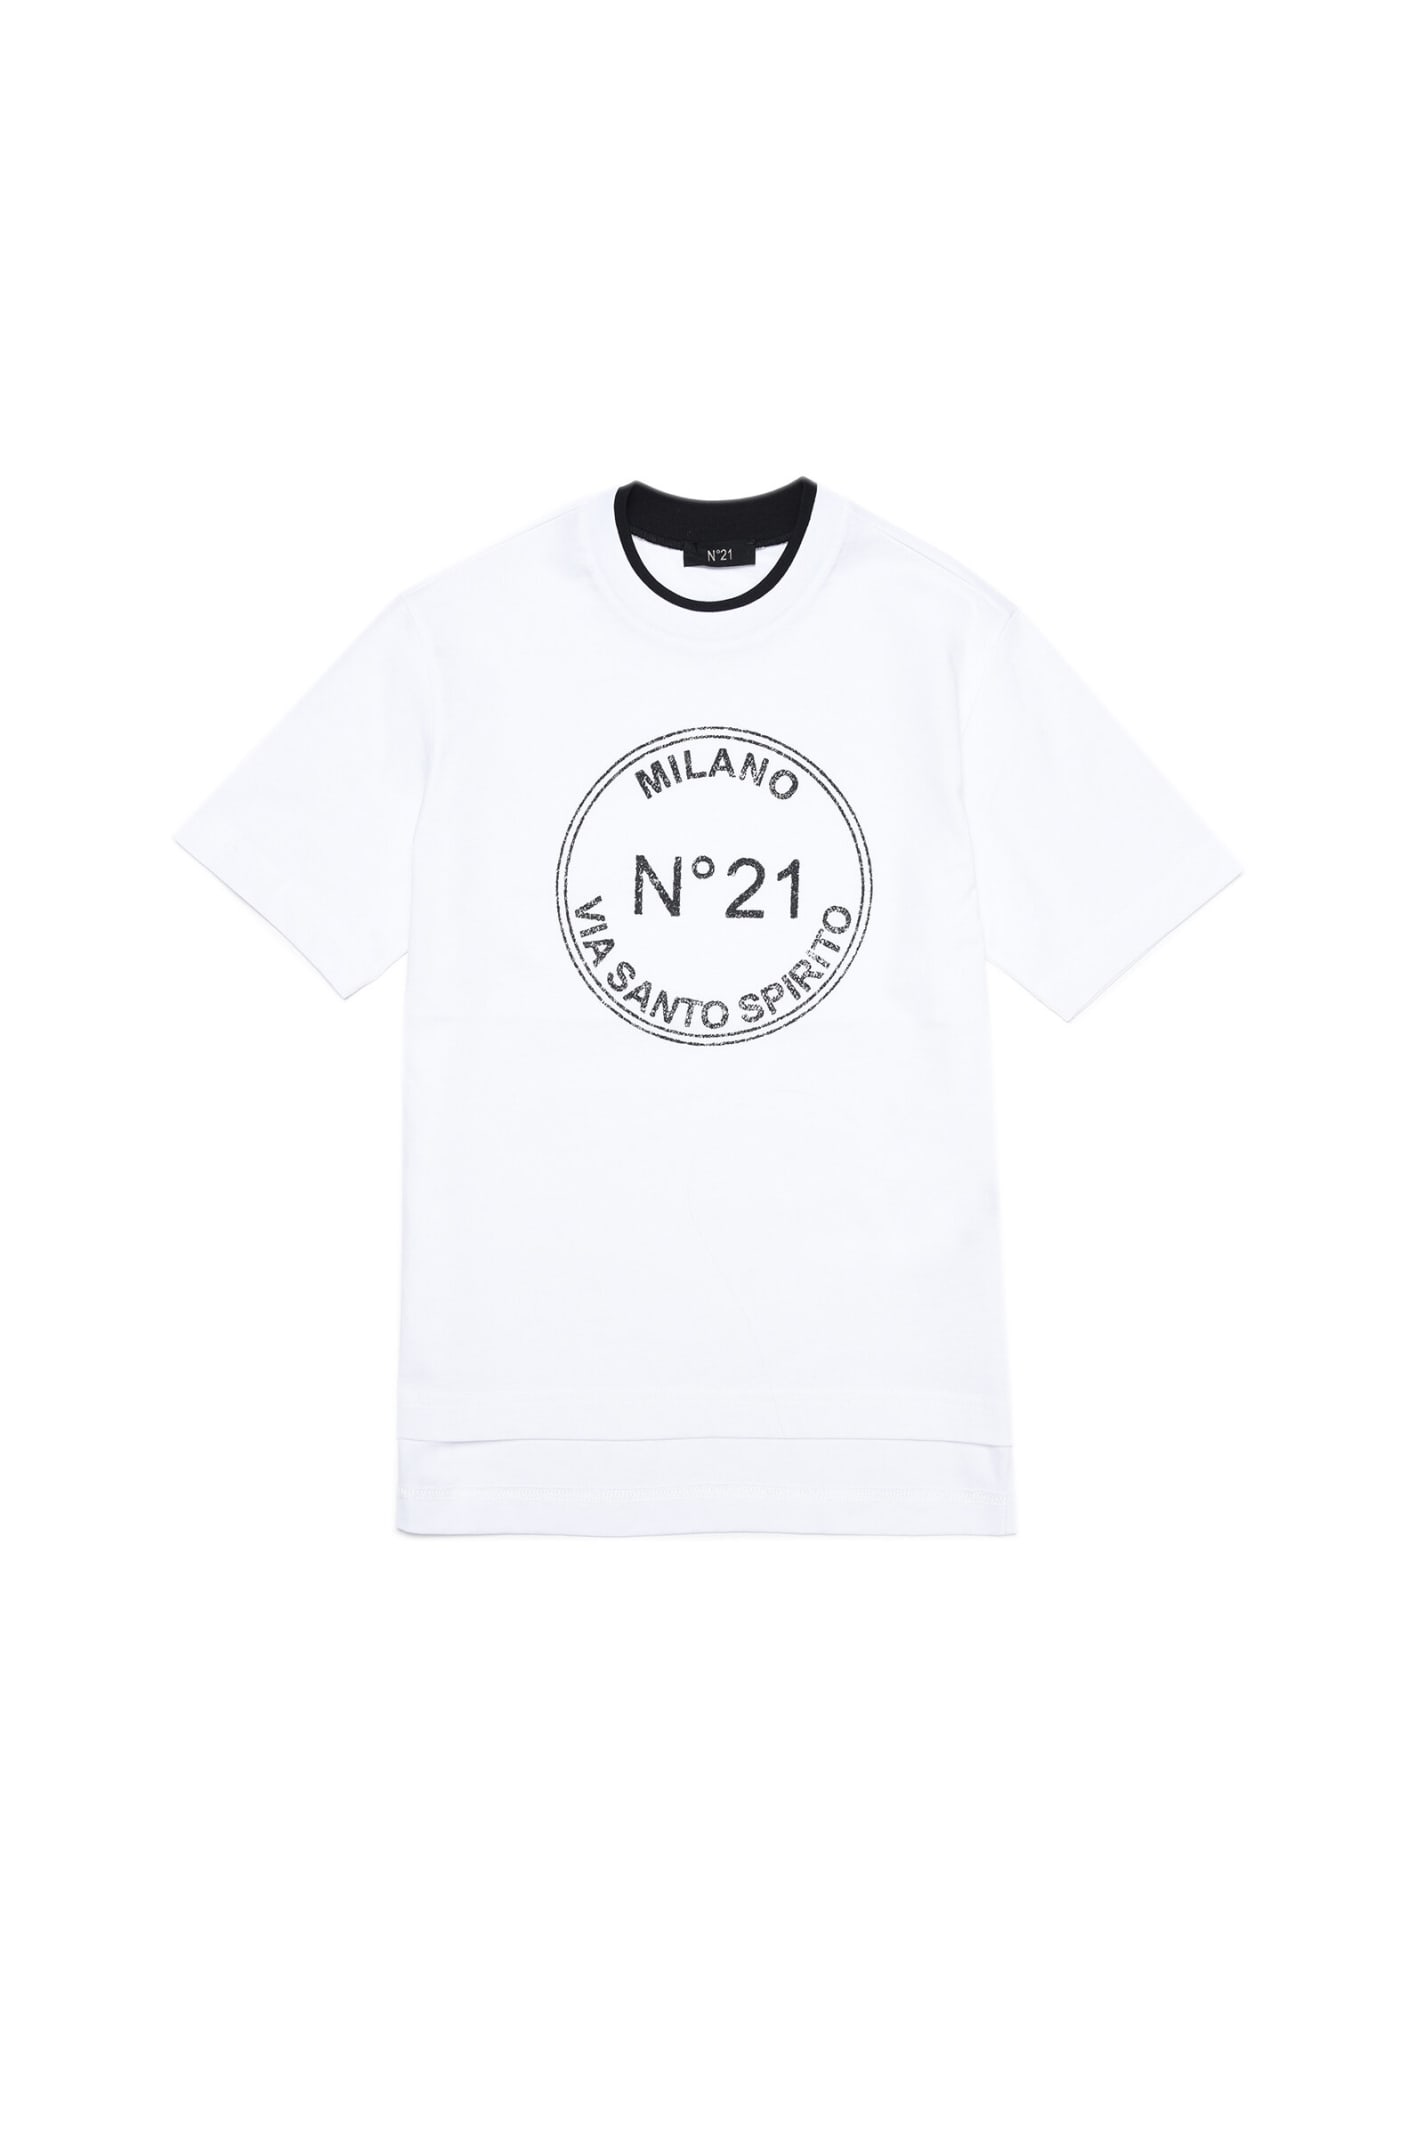 N.21 N21t112m Over T-shirt N°21